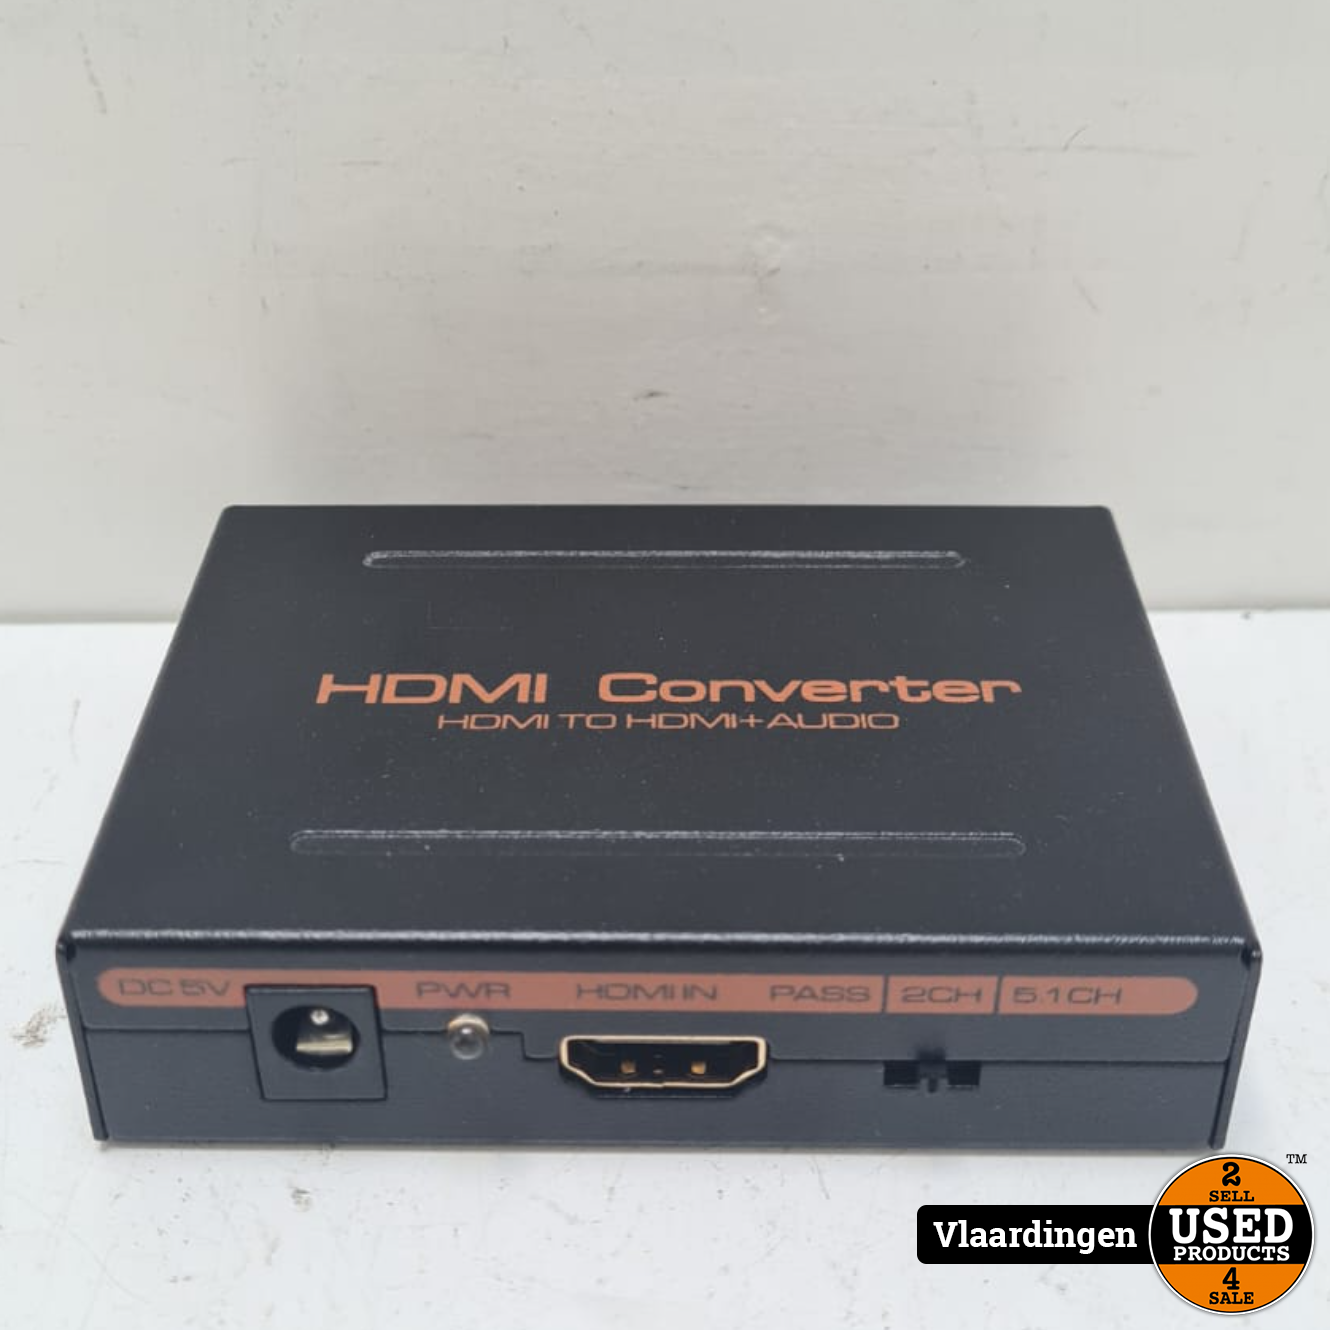 Een zin Verduisteren Achtervolging HDMI Audio Extractor - HDMI to HDMI + Audio - - Used Products Vlaardingen